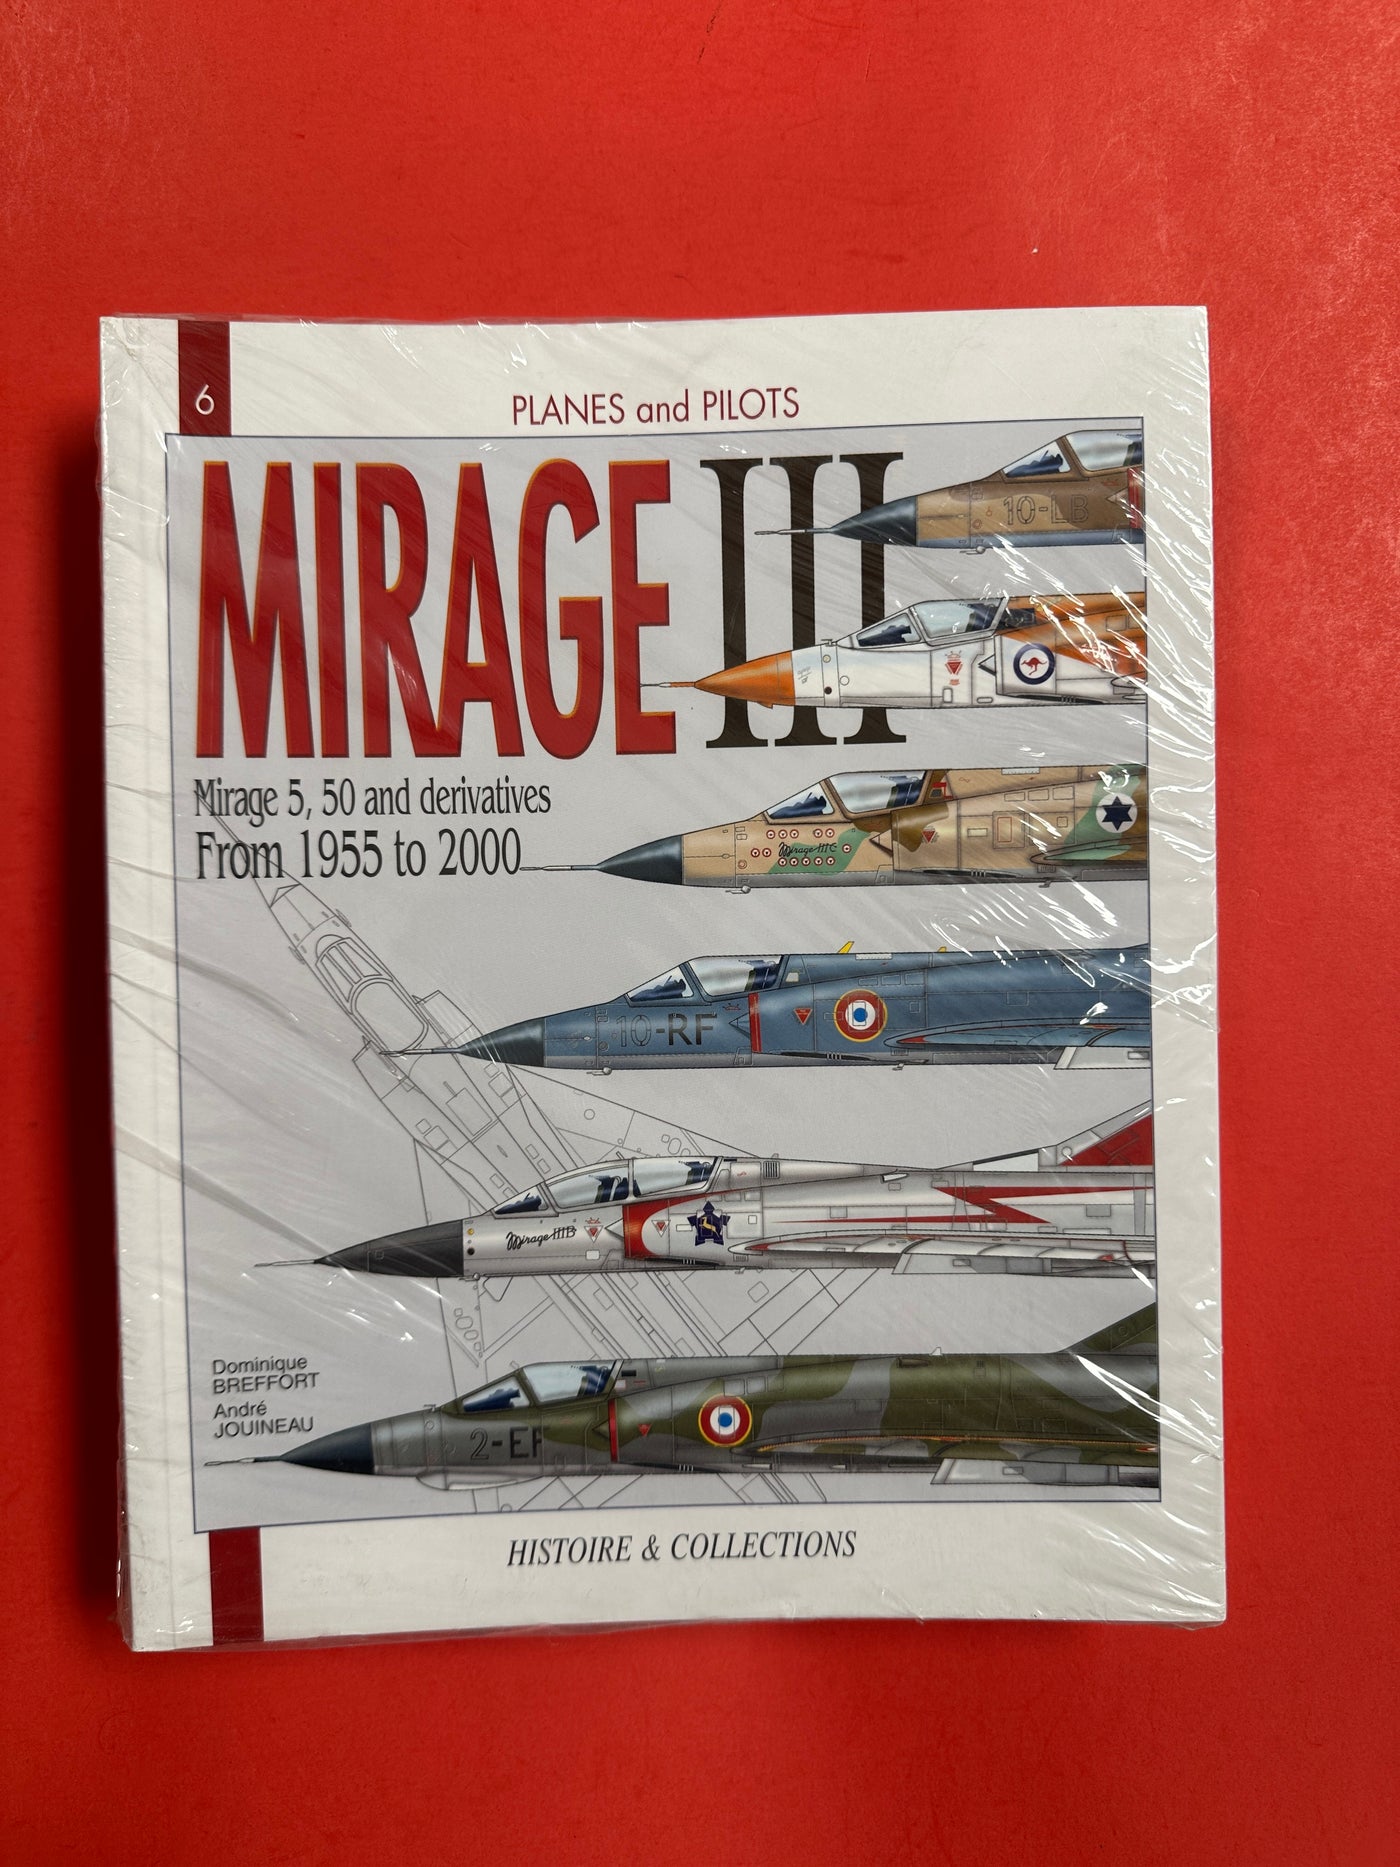 Mirage III-C: Von 1955 bis 2000 (Flugzeuge und Piloten 6)